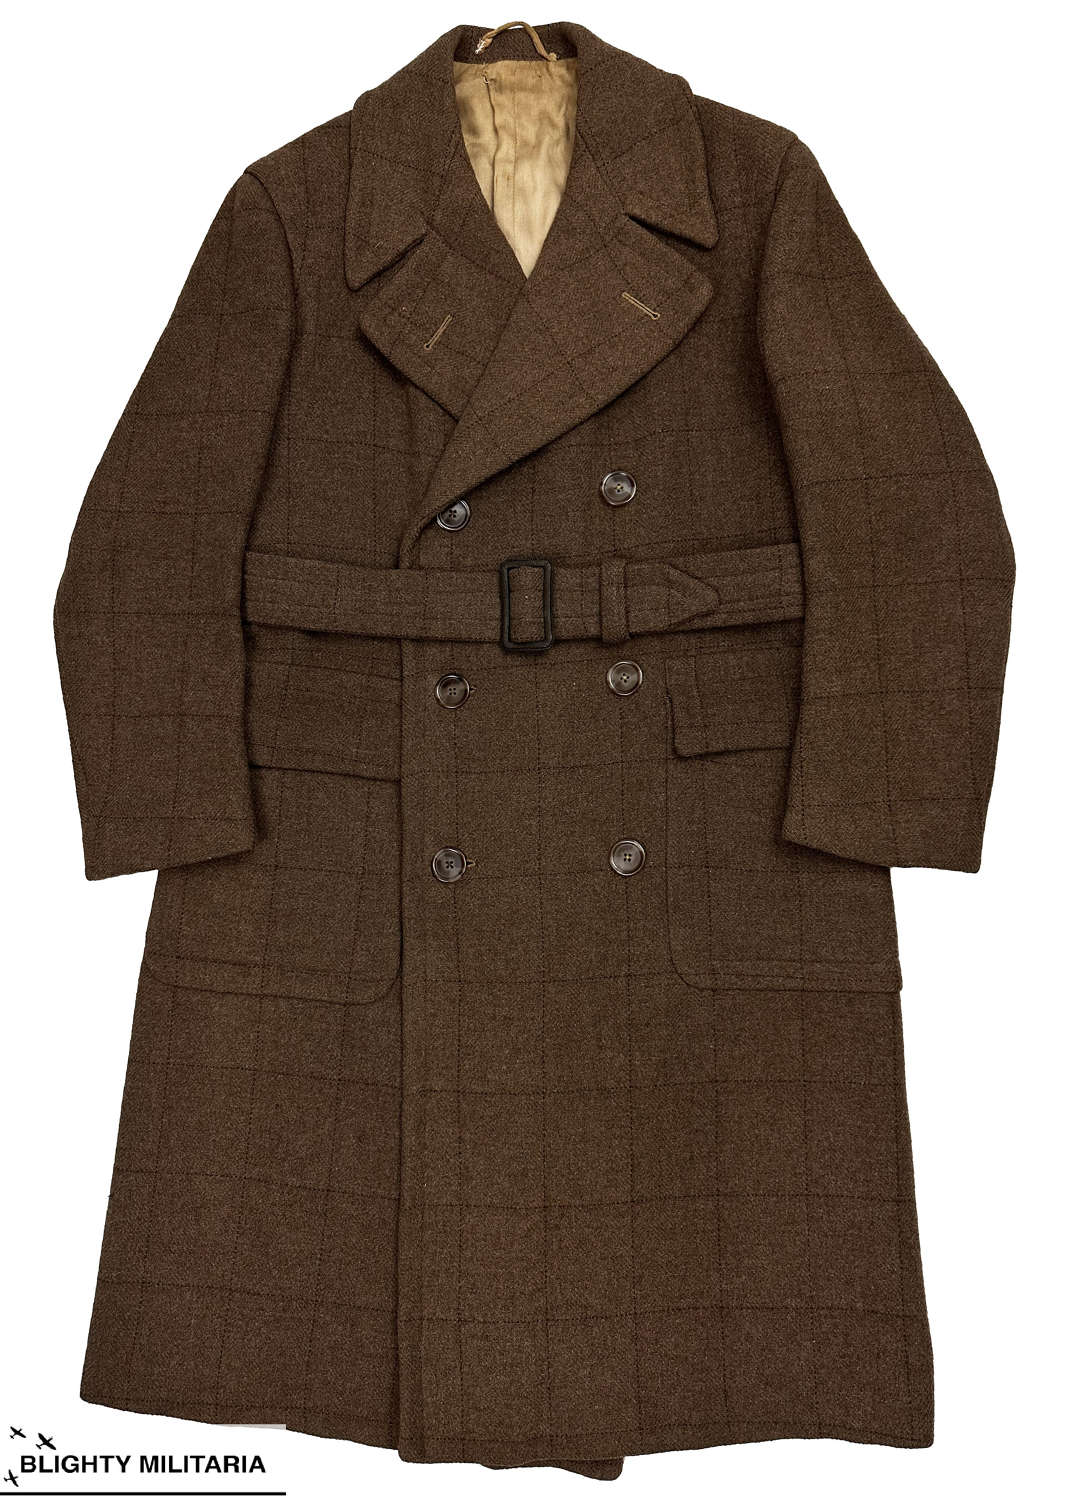 Original 1940s Men's Tweed Overcheck Double Breasted Overcoat Size 40